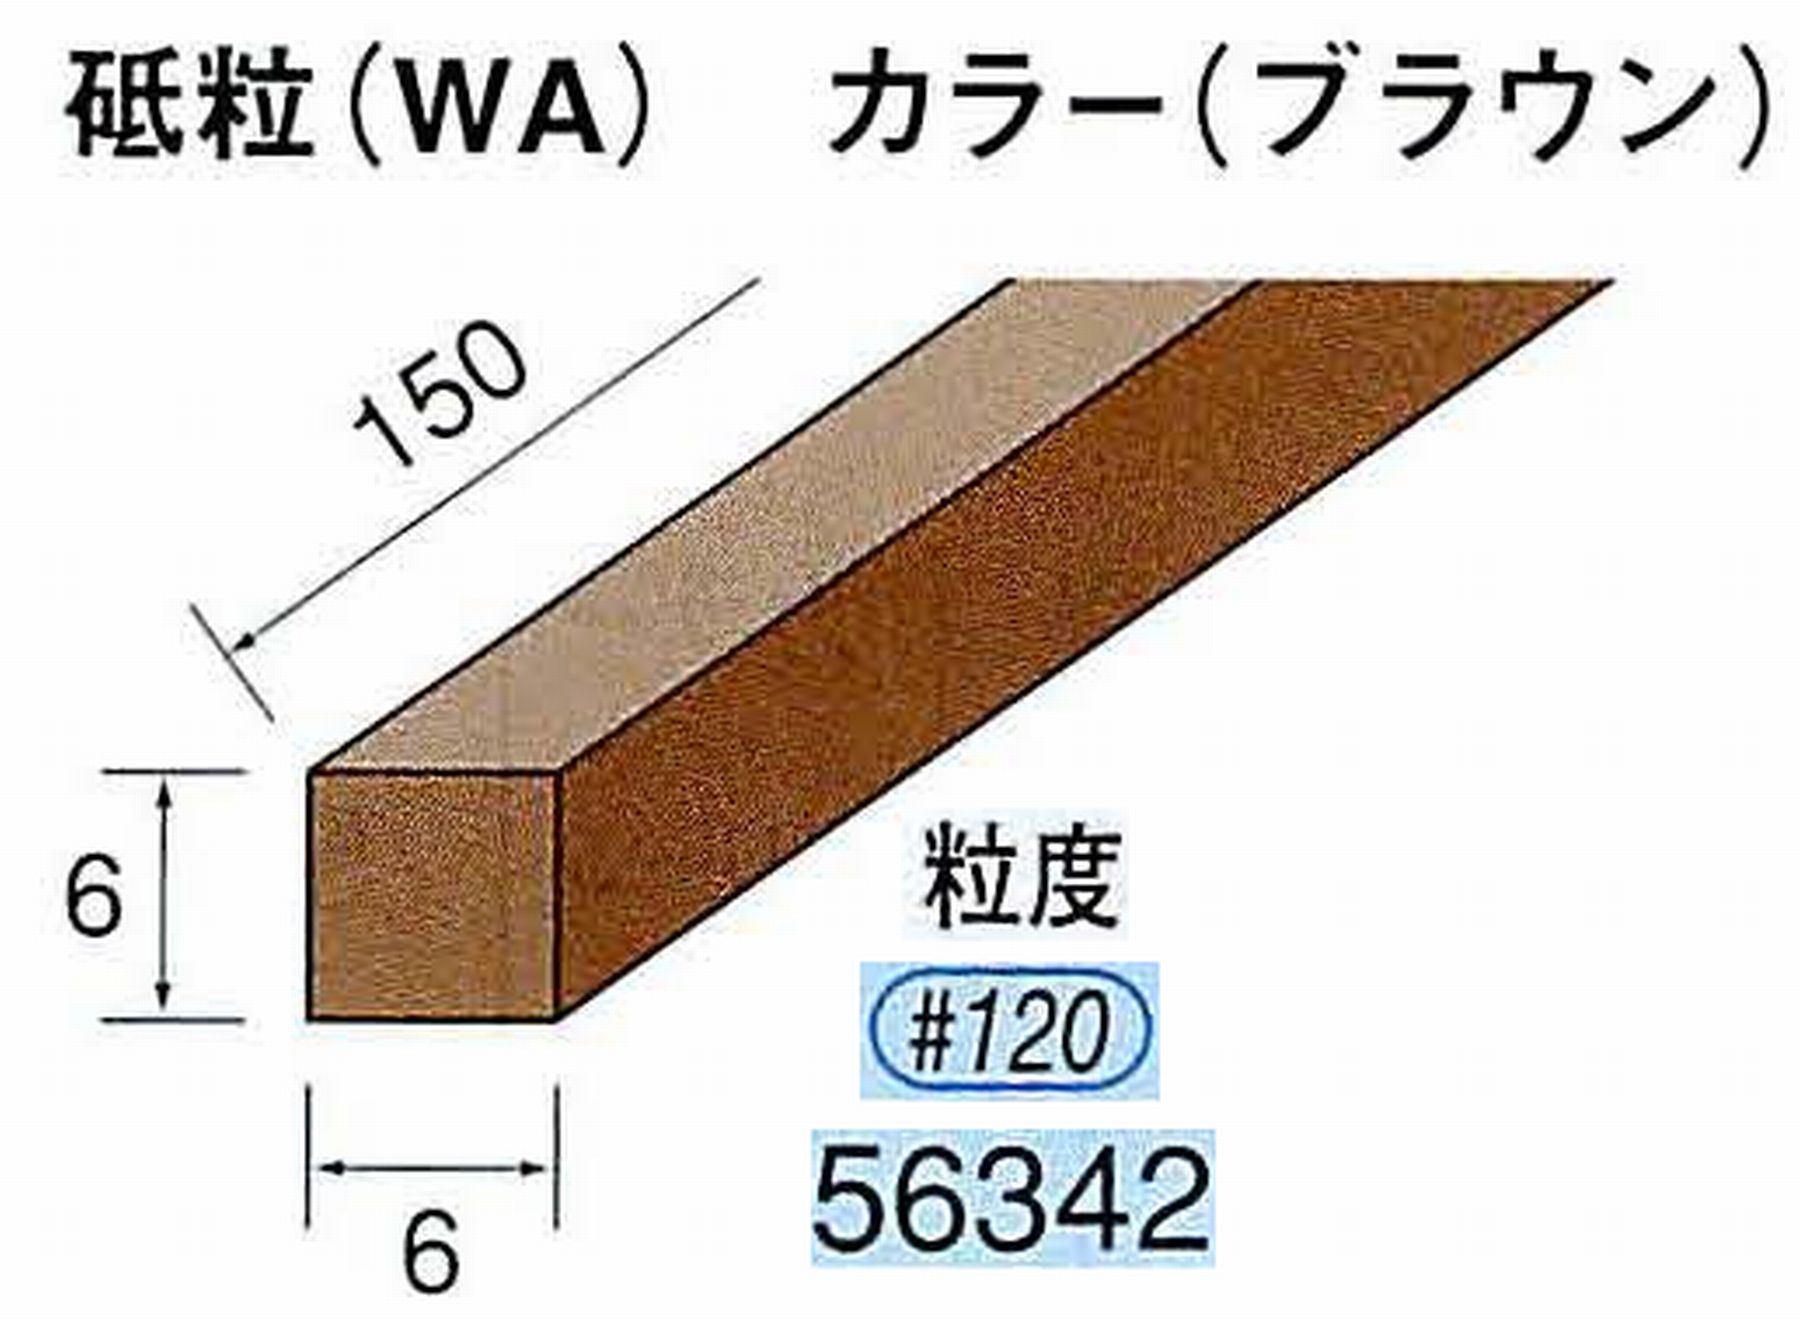 ナカニシ/NAKANISHI スティック砥石 ブラウン・フィニッシュシリーズ 砥粒(WA) 56342